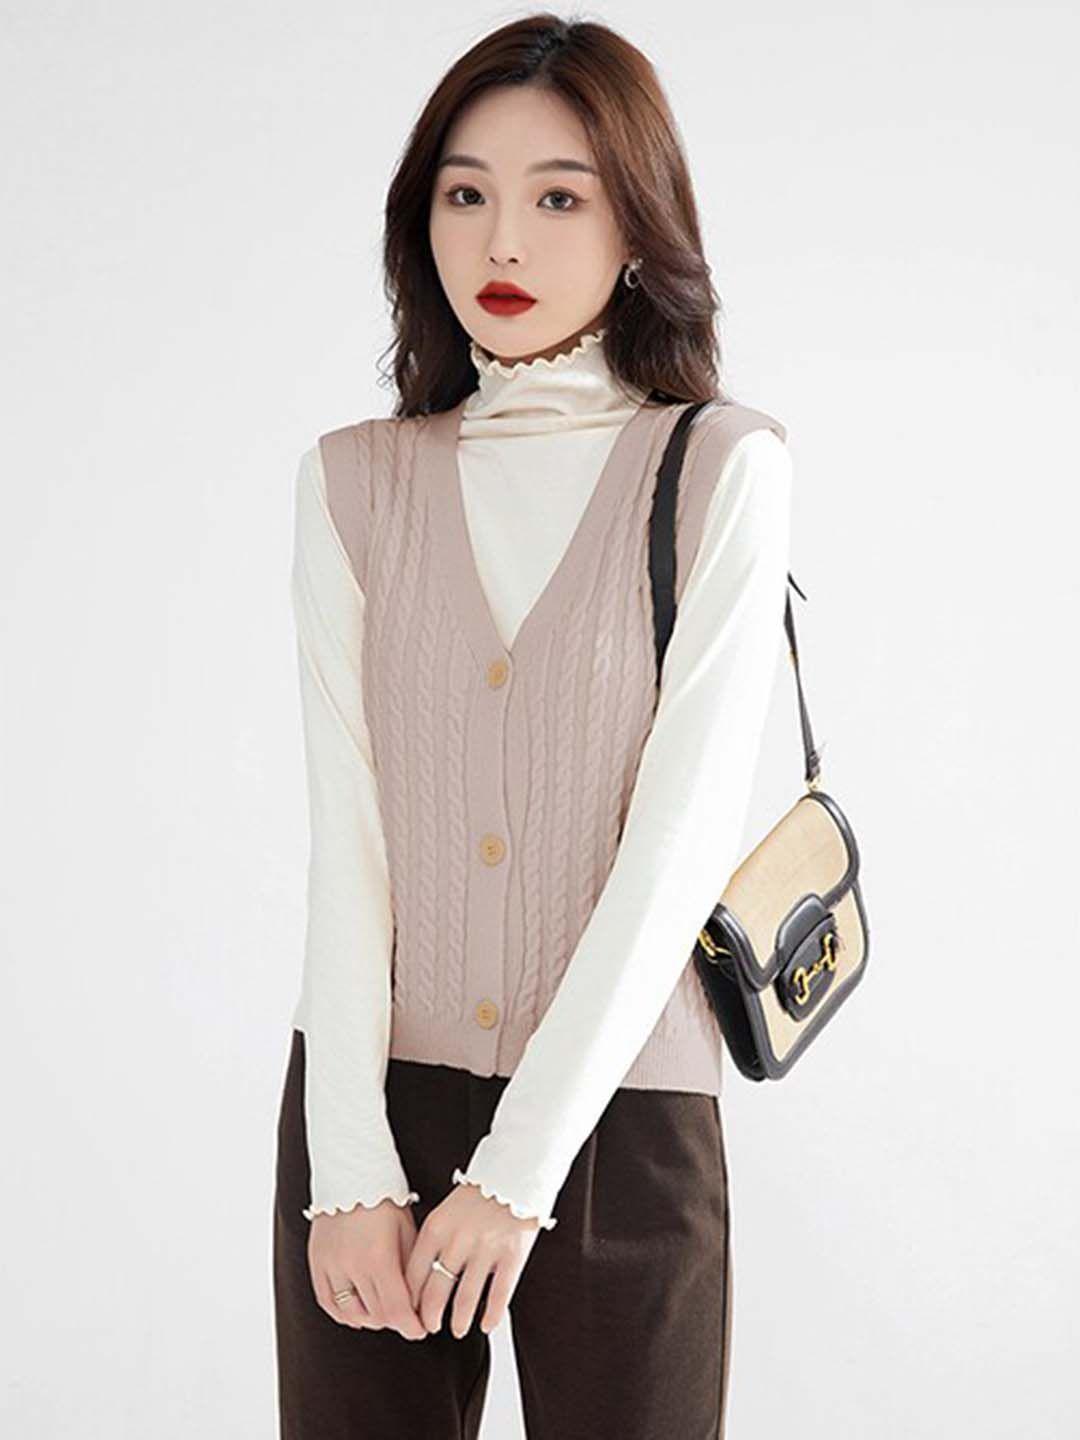 stylecast khaki cable knit self design v-neck sleeveless sweater vest